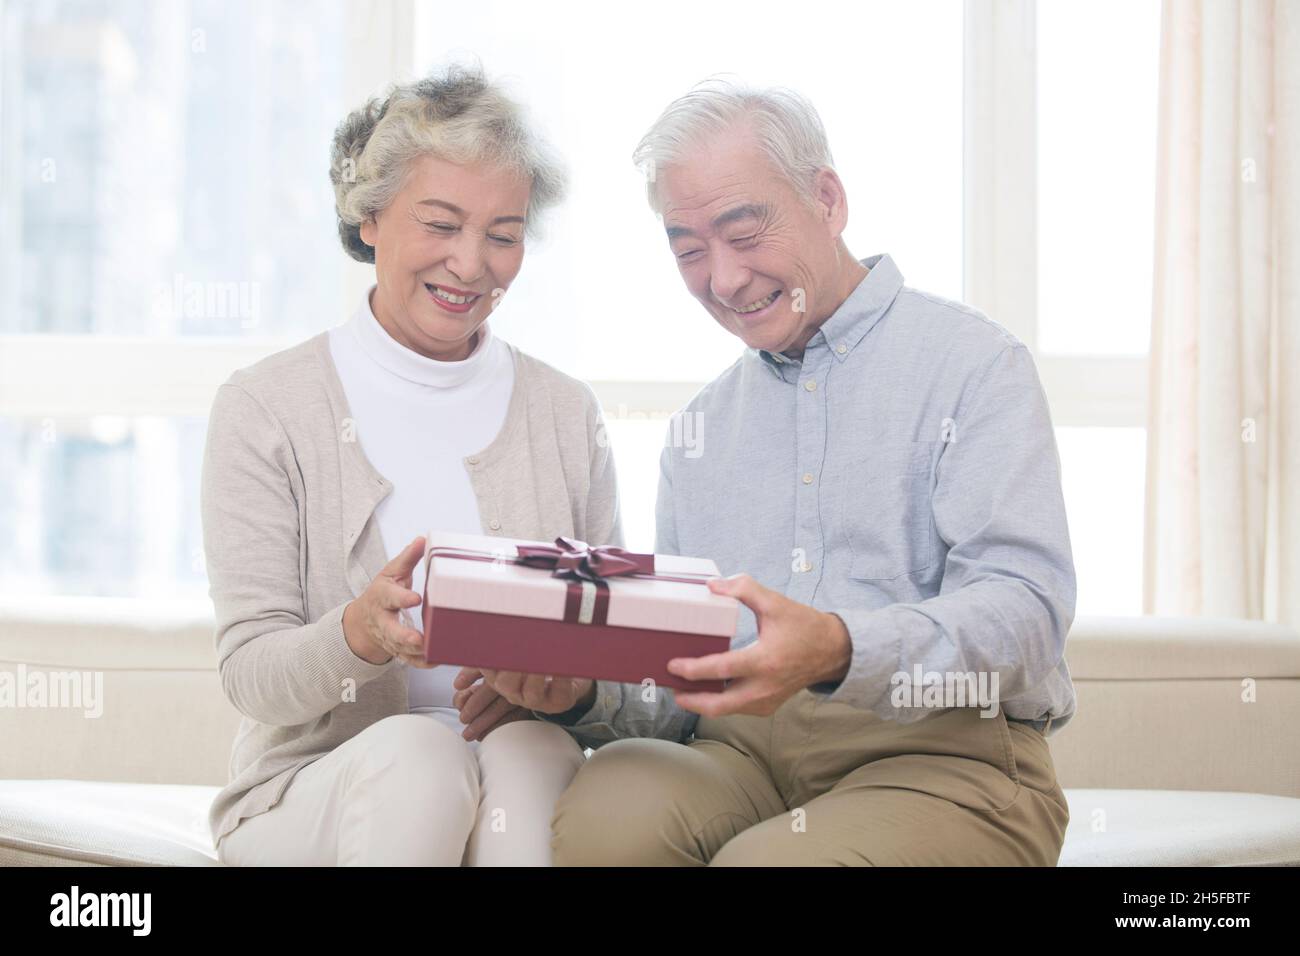 Alter Mann, der seiner Frau Geschenke gibt Stockfotografie - Alamy